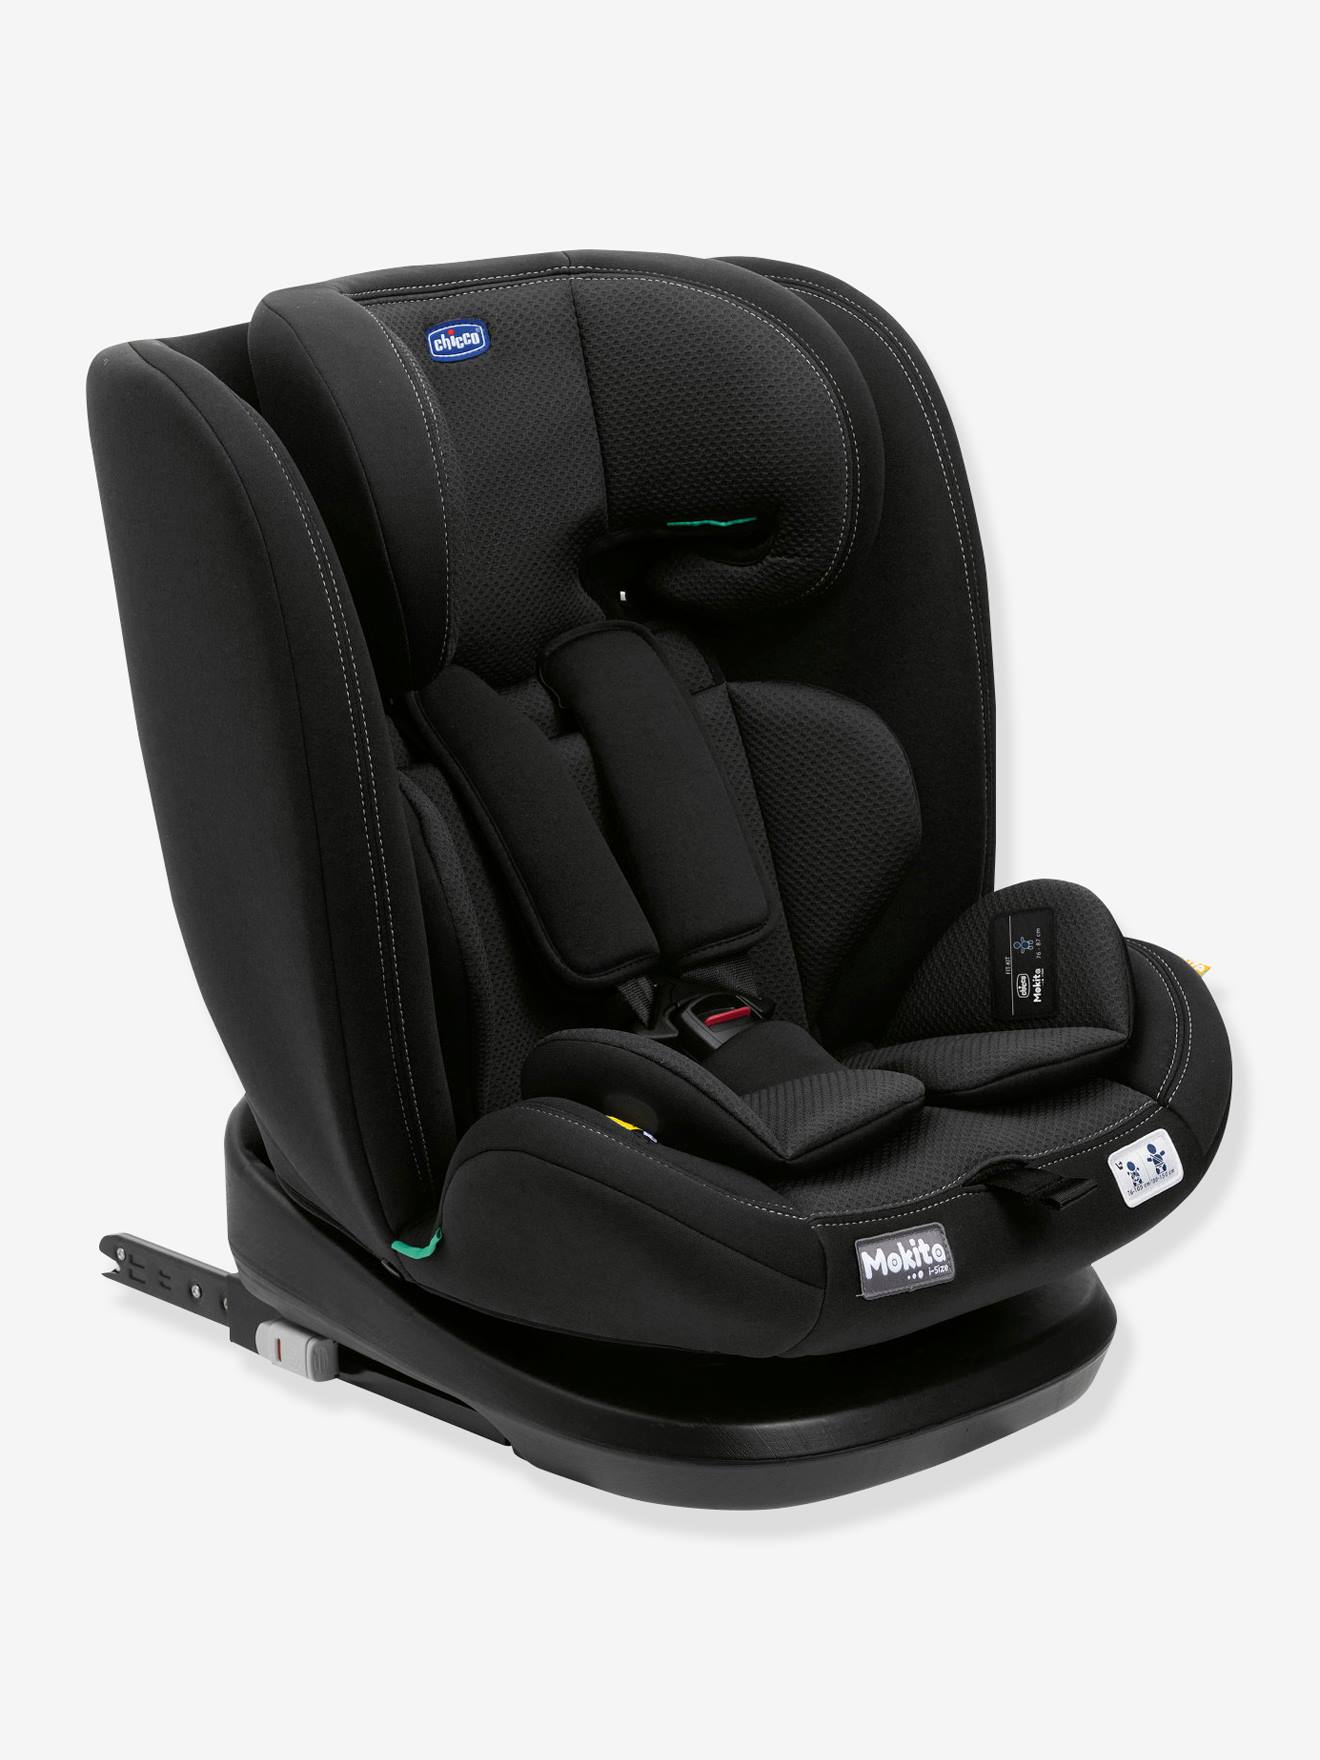 Babyschalen & Kindersitze - für eine sichere und bequeme Autofahrt